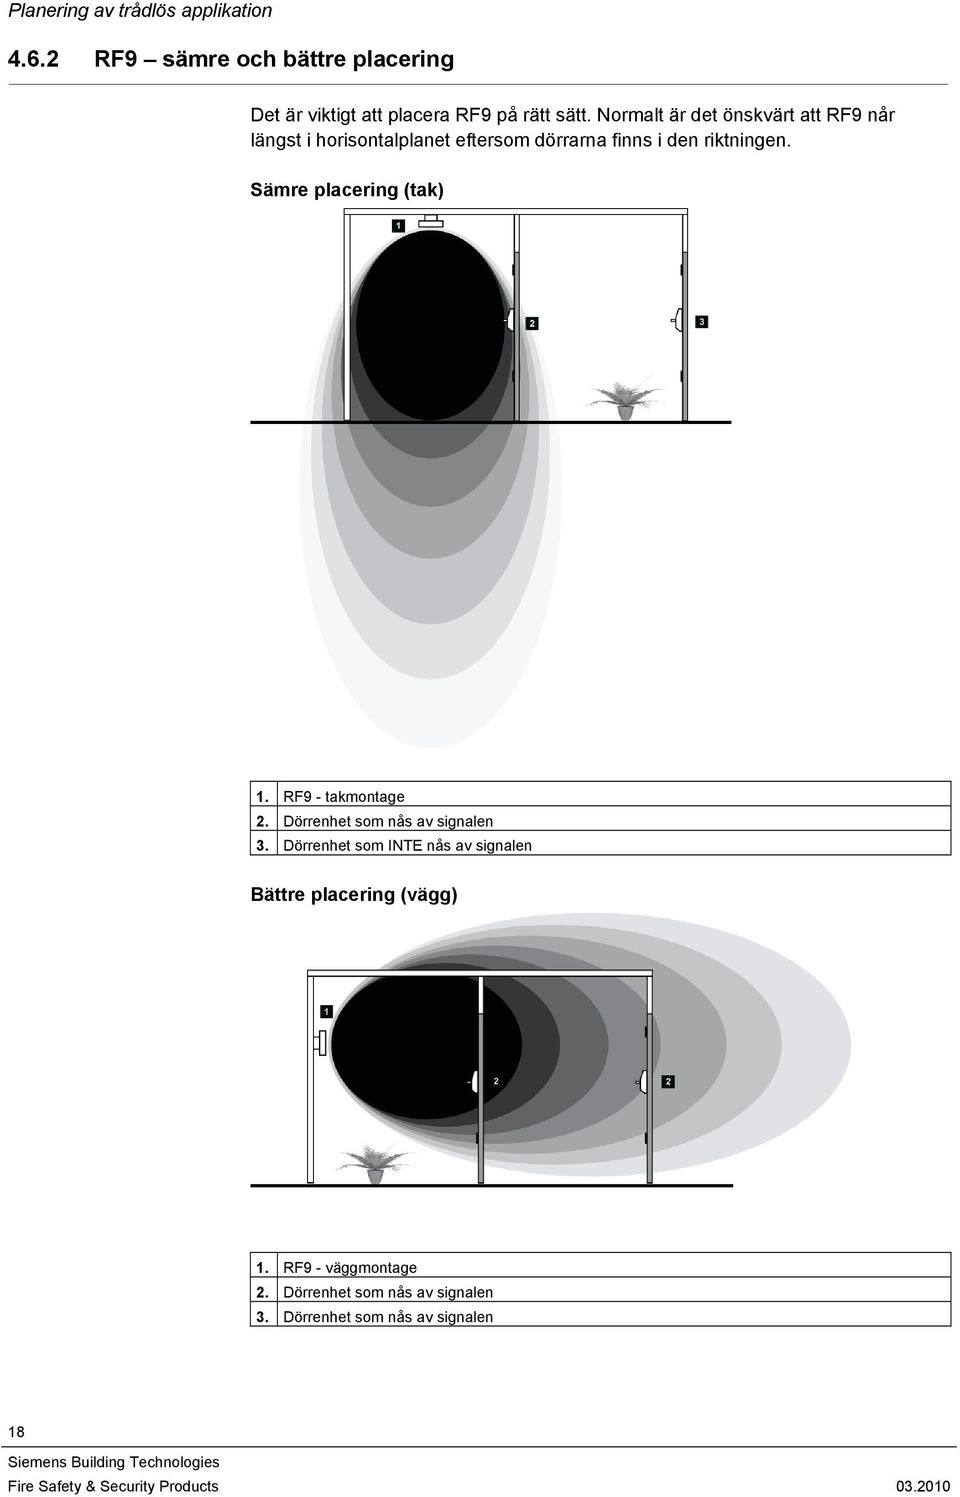 Normalt är det önskvärt att RF9 når längst i horisontalplanet eftersom dörrarna finns i den riktningen.